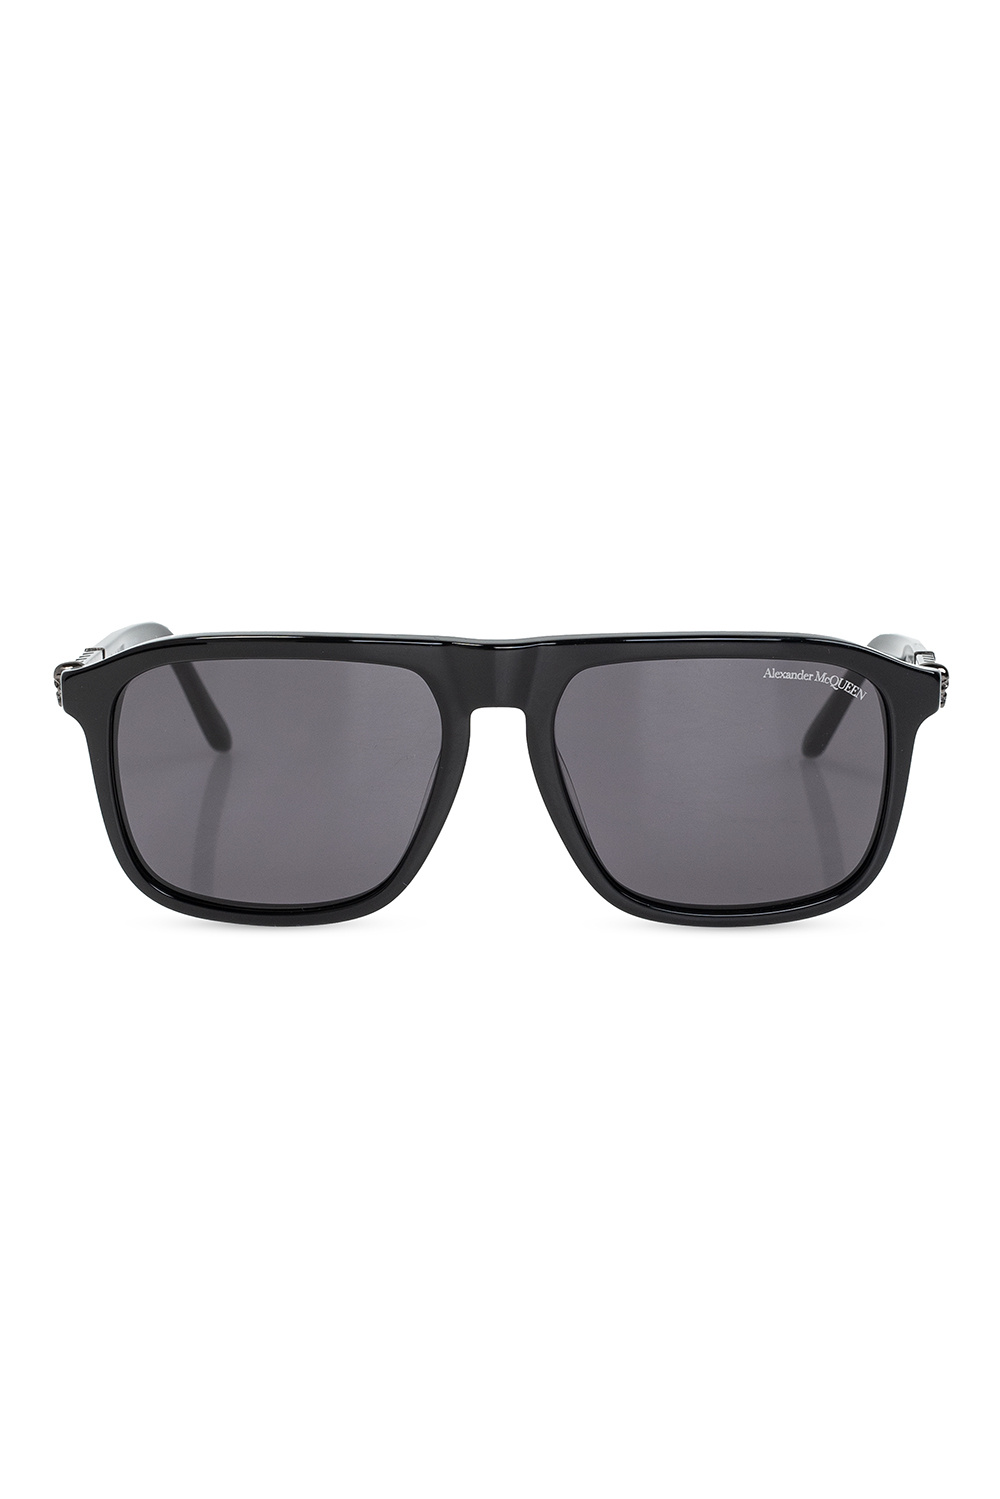 Alexander McQueen tom ford eyewear tortoiseshell square frame sunglasses item